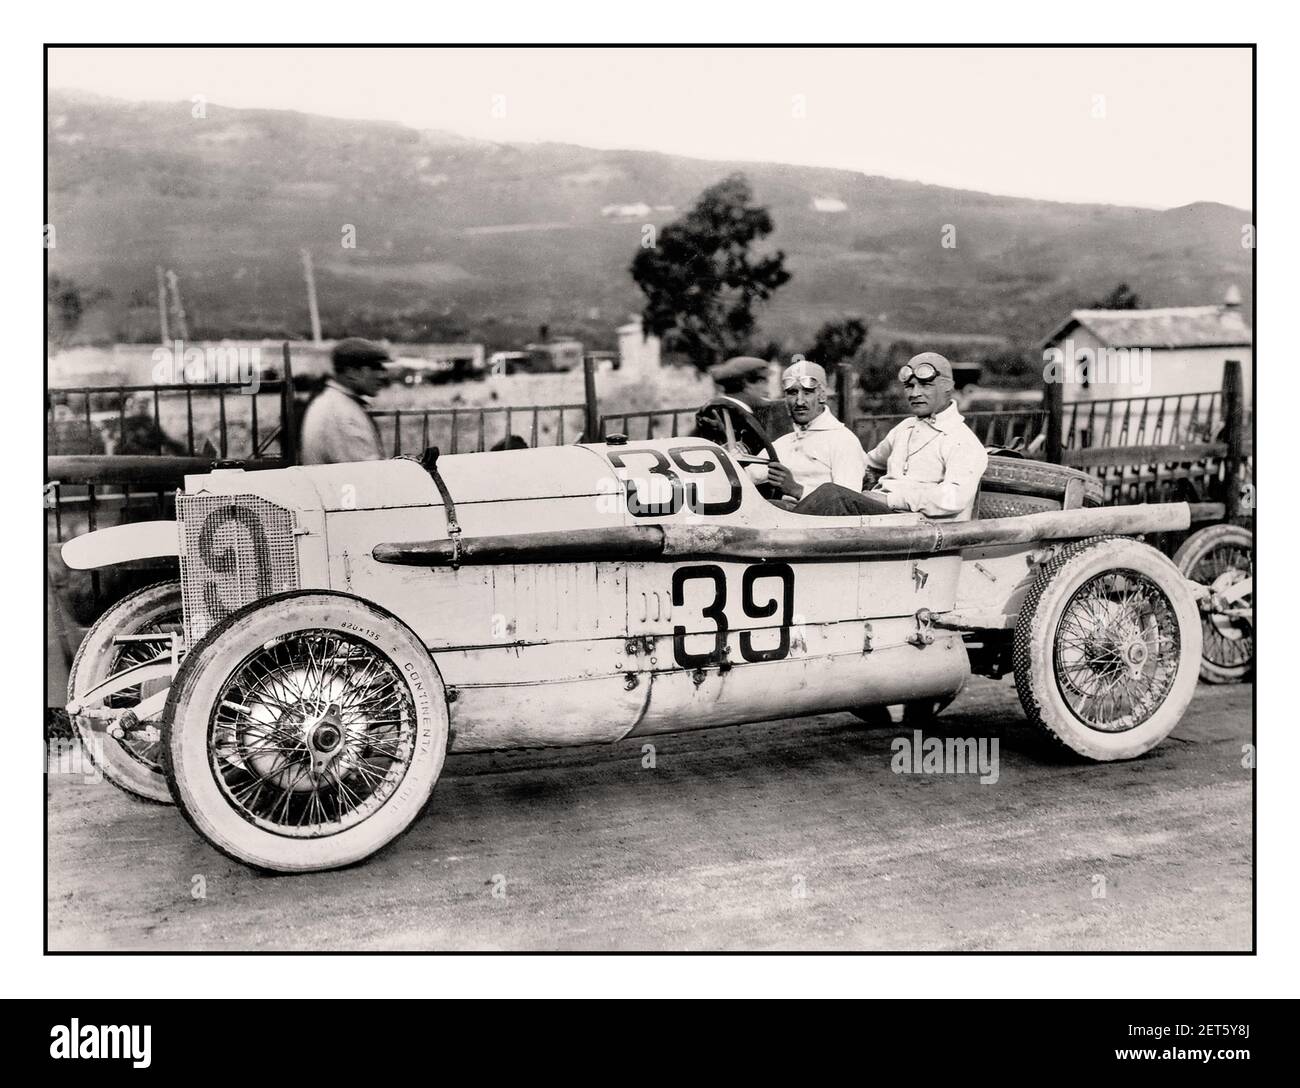 Vintage Mercedes n° 39 28/95 hp Rennversion 1922 questa vettura è stata la "ammiraglia" di DMG dal 1914 al 1924 e ha gettato le basi per l'alta reputazione delle grandi vetture sportive Mercedes-Benz. Nei primi anni '20, il suo motore è stato utilizzato come banco di prova per il sovralimentatore con cui ha vinto la categoria di auto di produzione oltre 4.5 l nella Targa Florio 1922, Pilotato da Max Sailer che aveva già vinto la categoria di auto di produzione con la naturale aspirata auto da 28/95 hp nell'evento 1921. Foto Stock